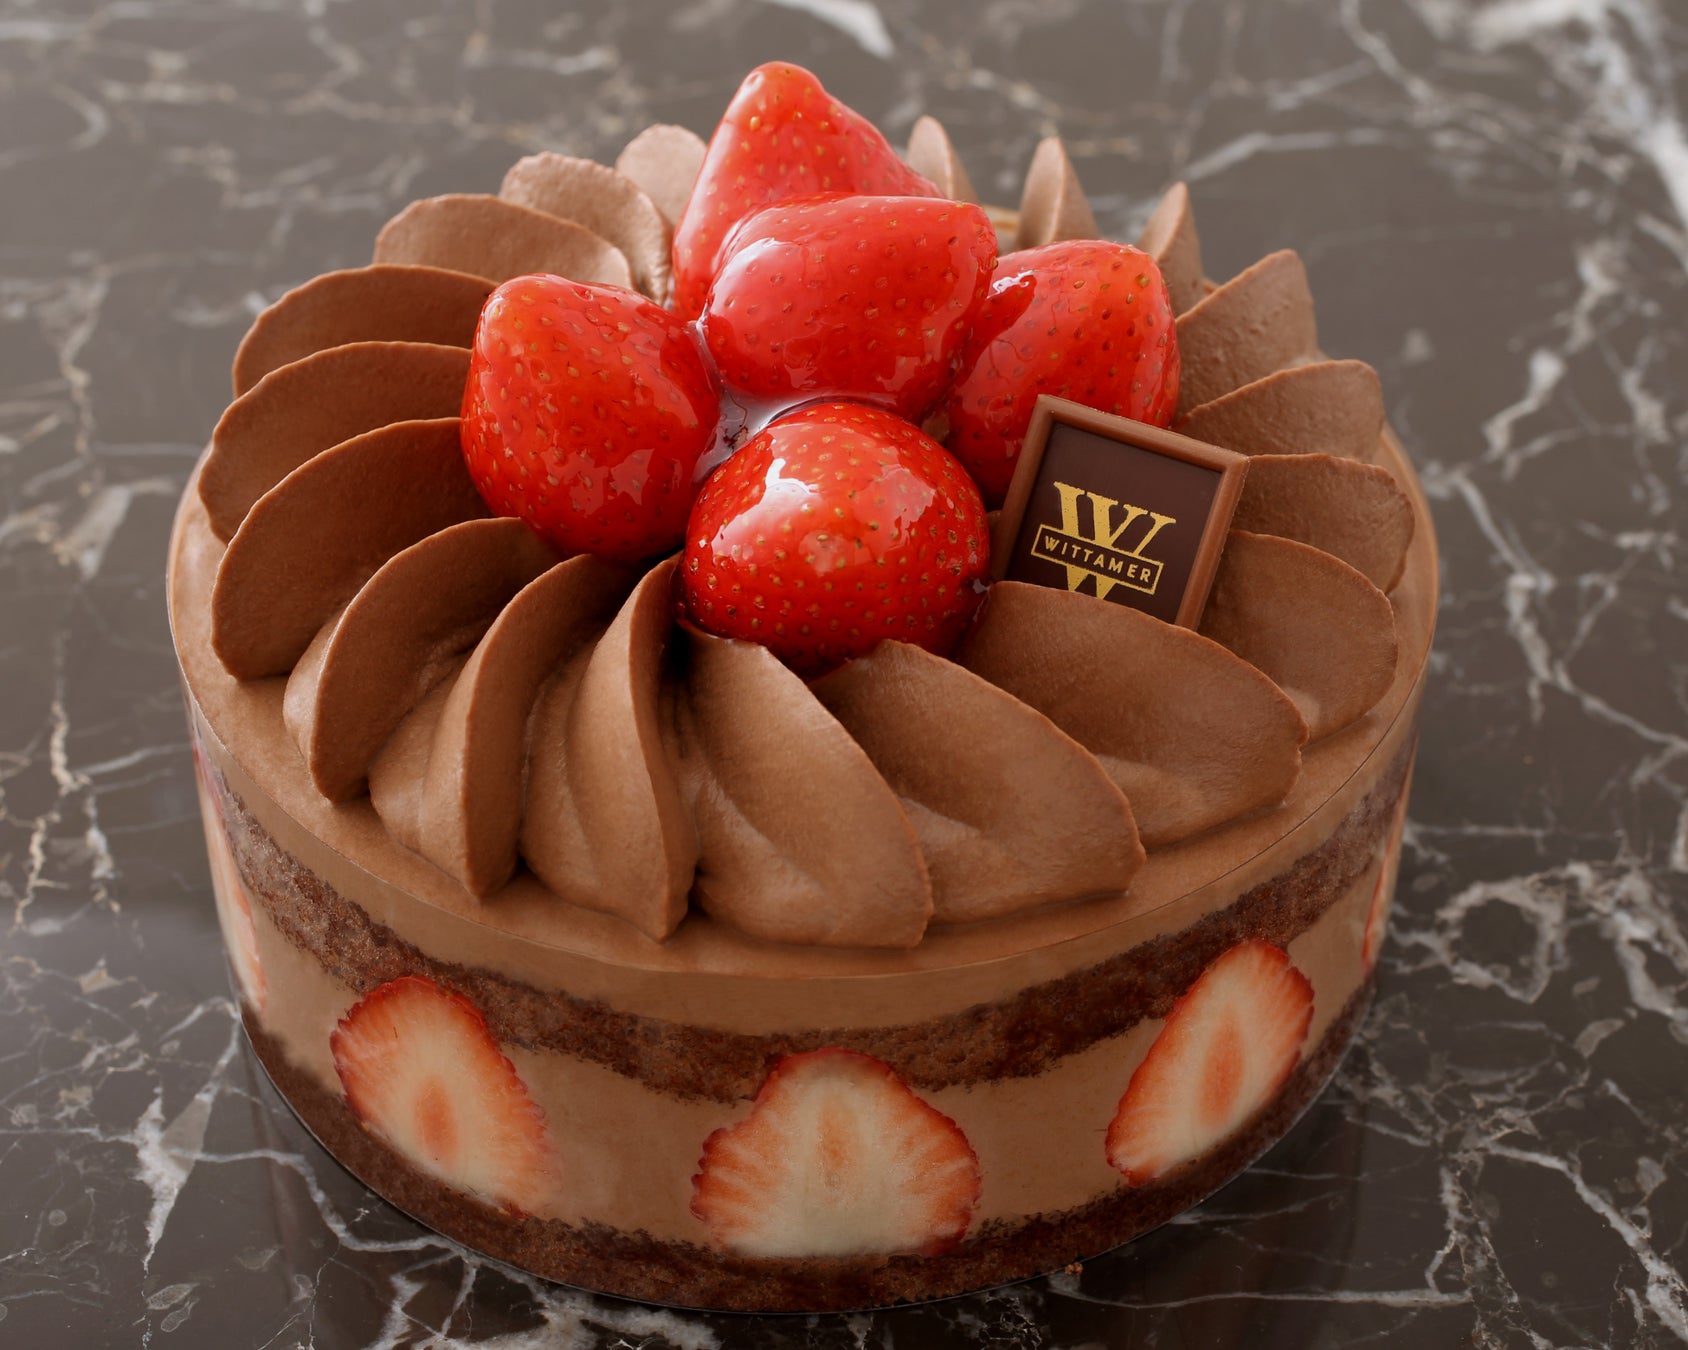 【アンテノール】　濃厚チョコレートケーキで楽しむバレンタイン2/11 ～ 14 の 4 日間限定販売